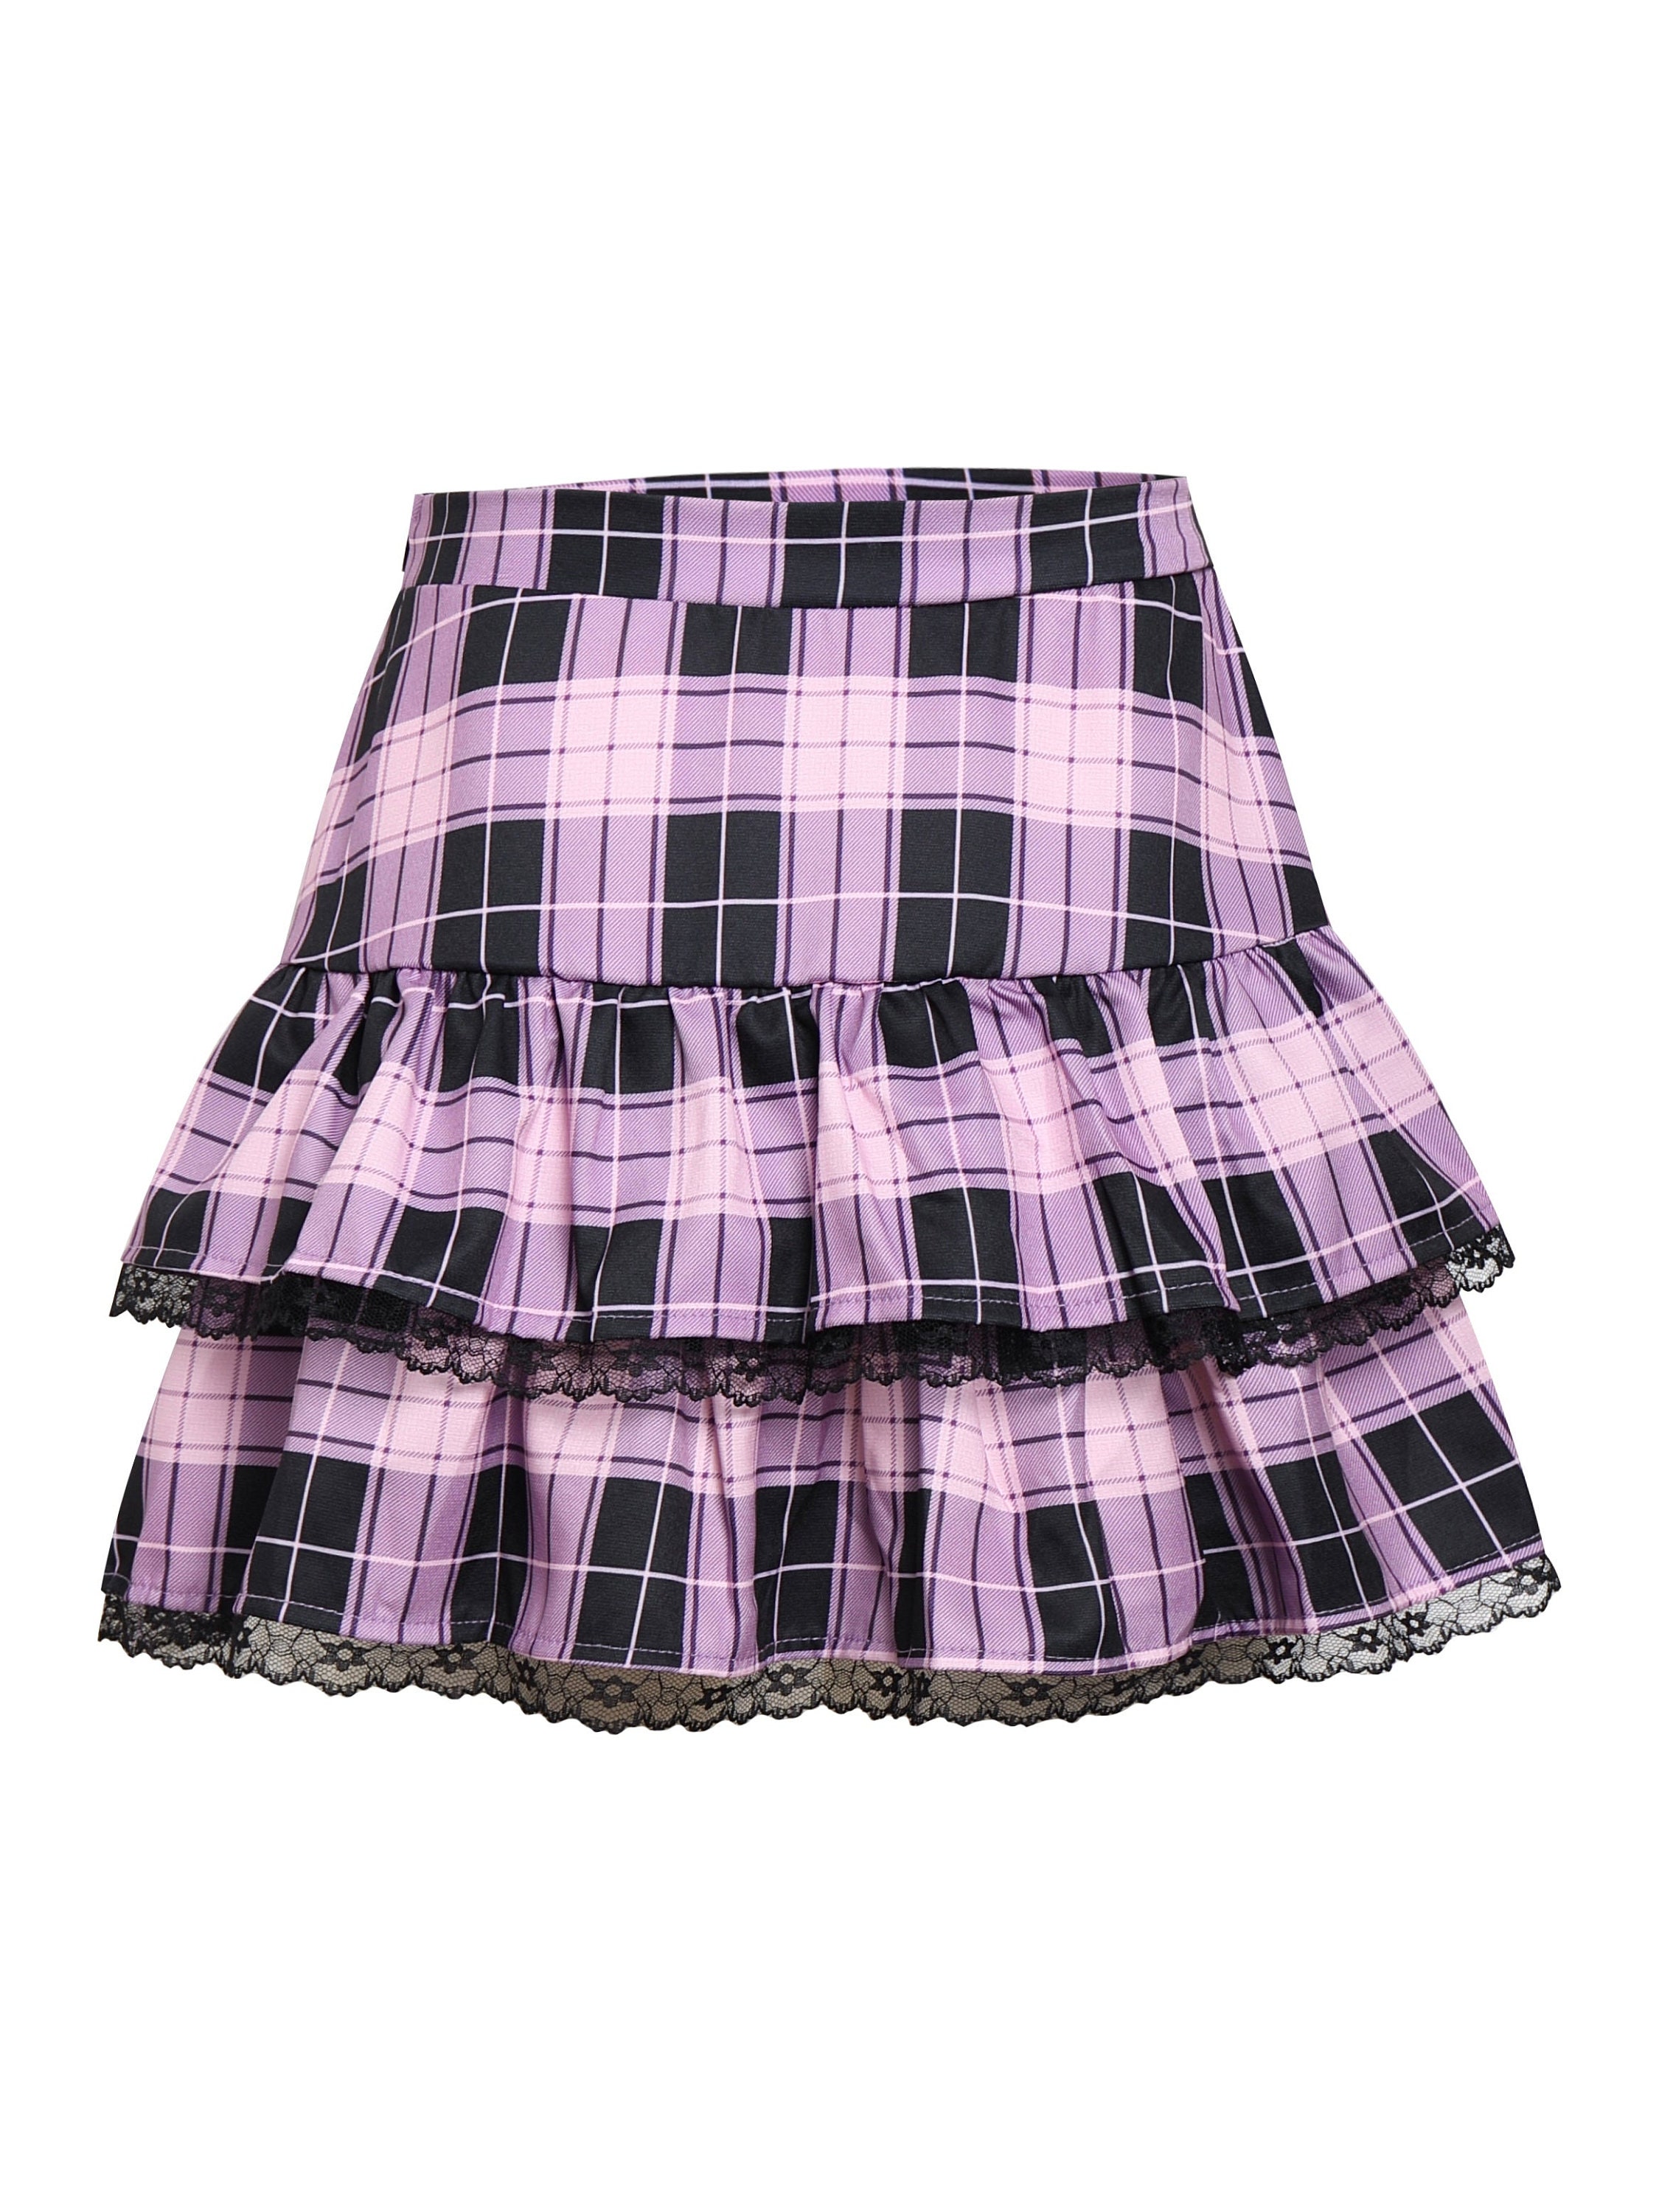 Custom Kpop Aespa Ningning Purple Plaid Black Lace Y2k Skirt - Etsy